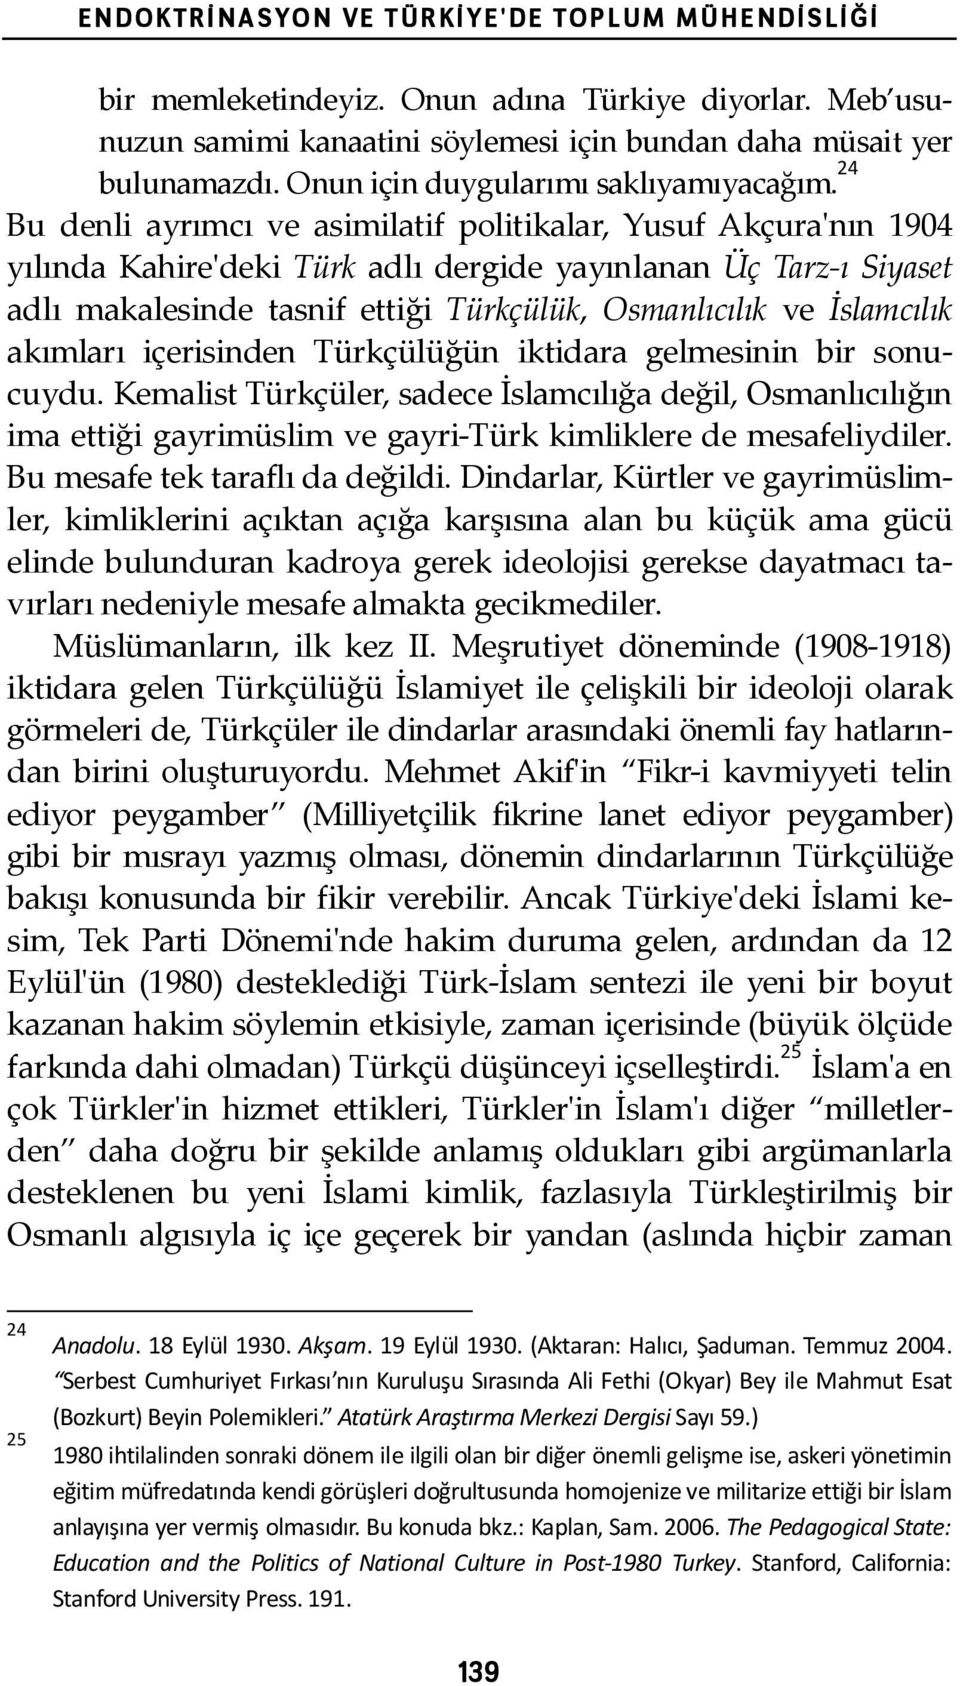 24 Bu denli ayrımcı ve asimilatif politikalar, Yusuf Akçura'ʹnın 1904 yılında Kahire'ʹdeki Türk adlı dergide yayınlanan Üç Tarz- ı Siyaset adlı makalesinde tasnif ettiği Türkçülük, Osmanlıcılık ve